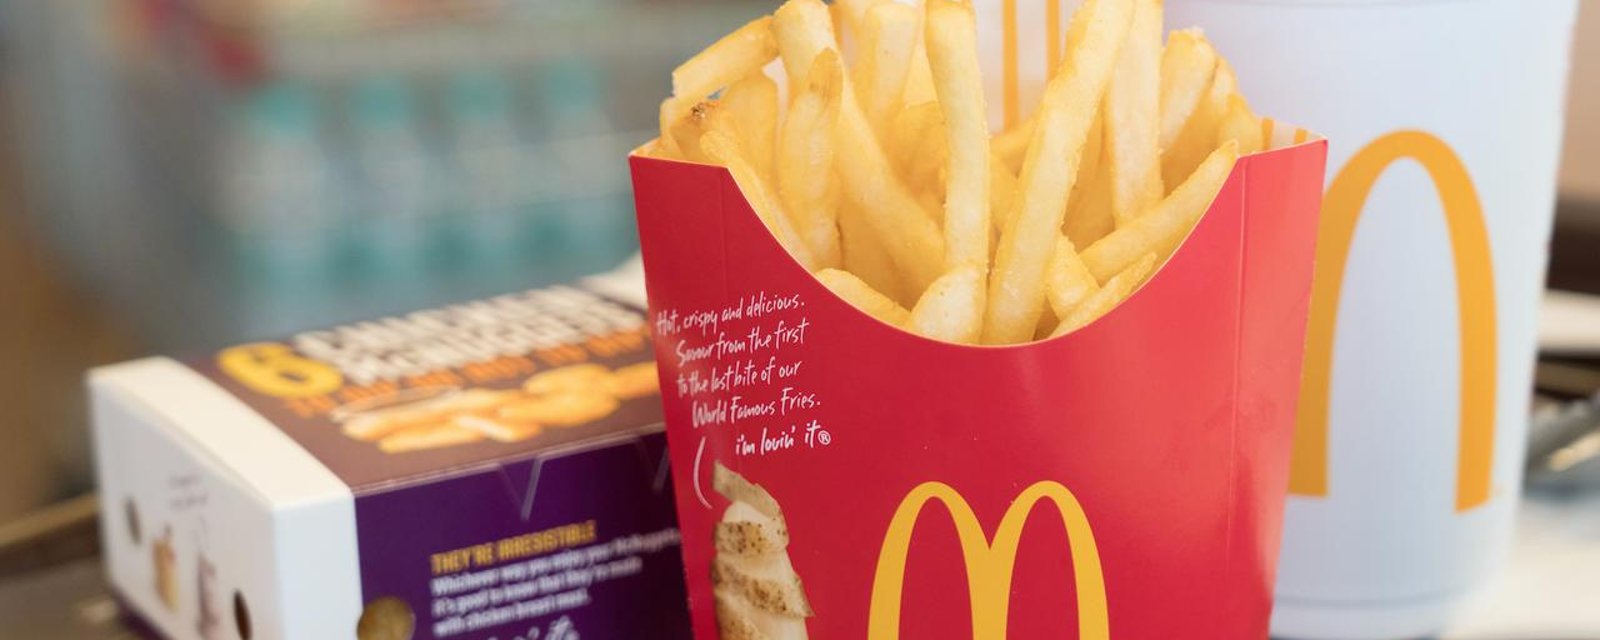 Une immense rumeur circule sur les frites McDonald's en ce moment